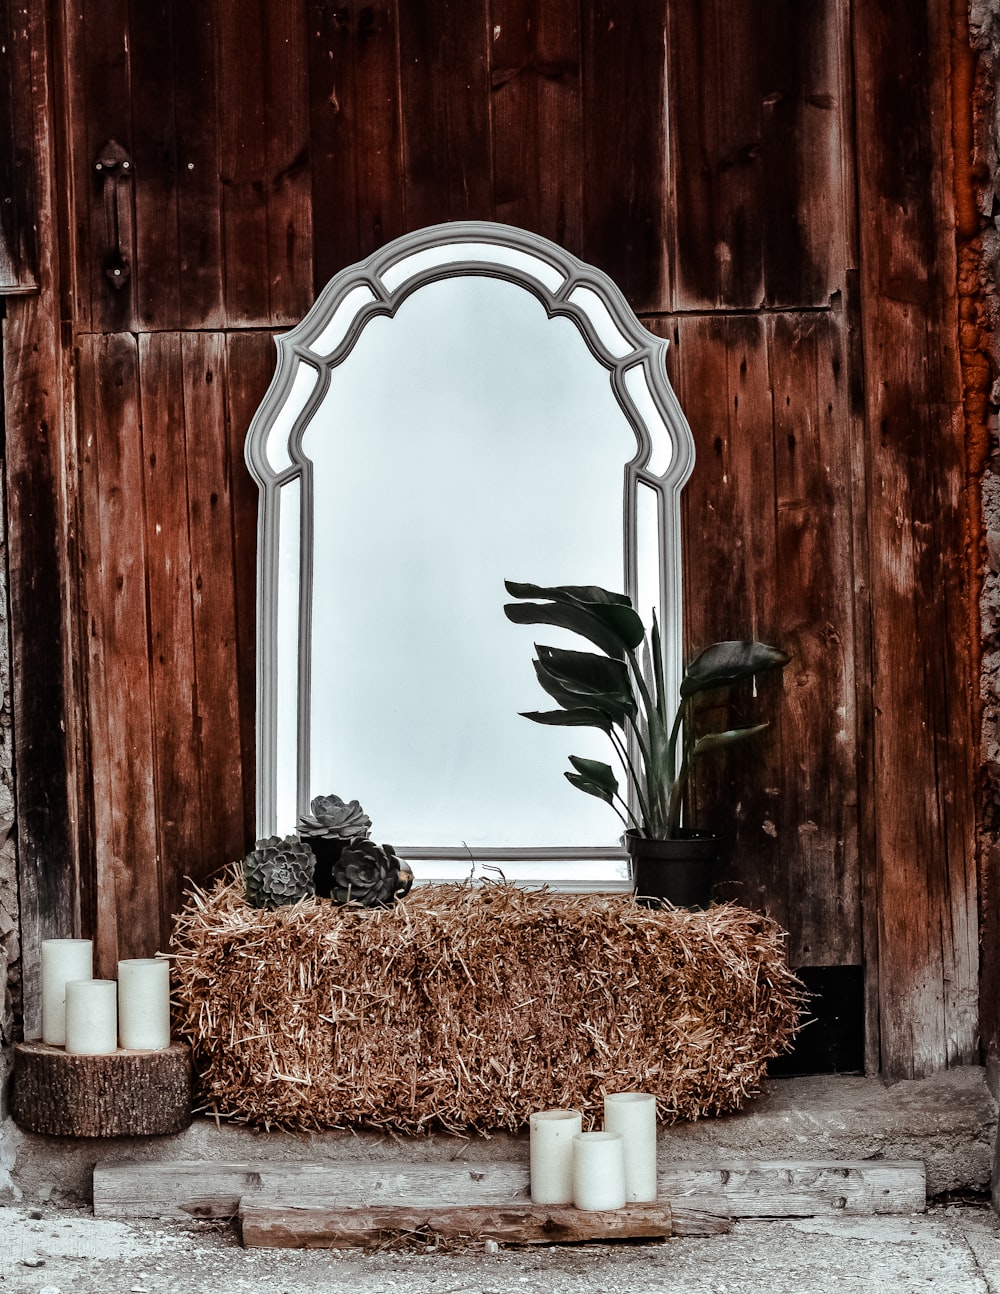 회색 프레임 기울어 거울 건초와 화분에 심은 녹색 잎 식물